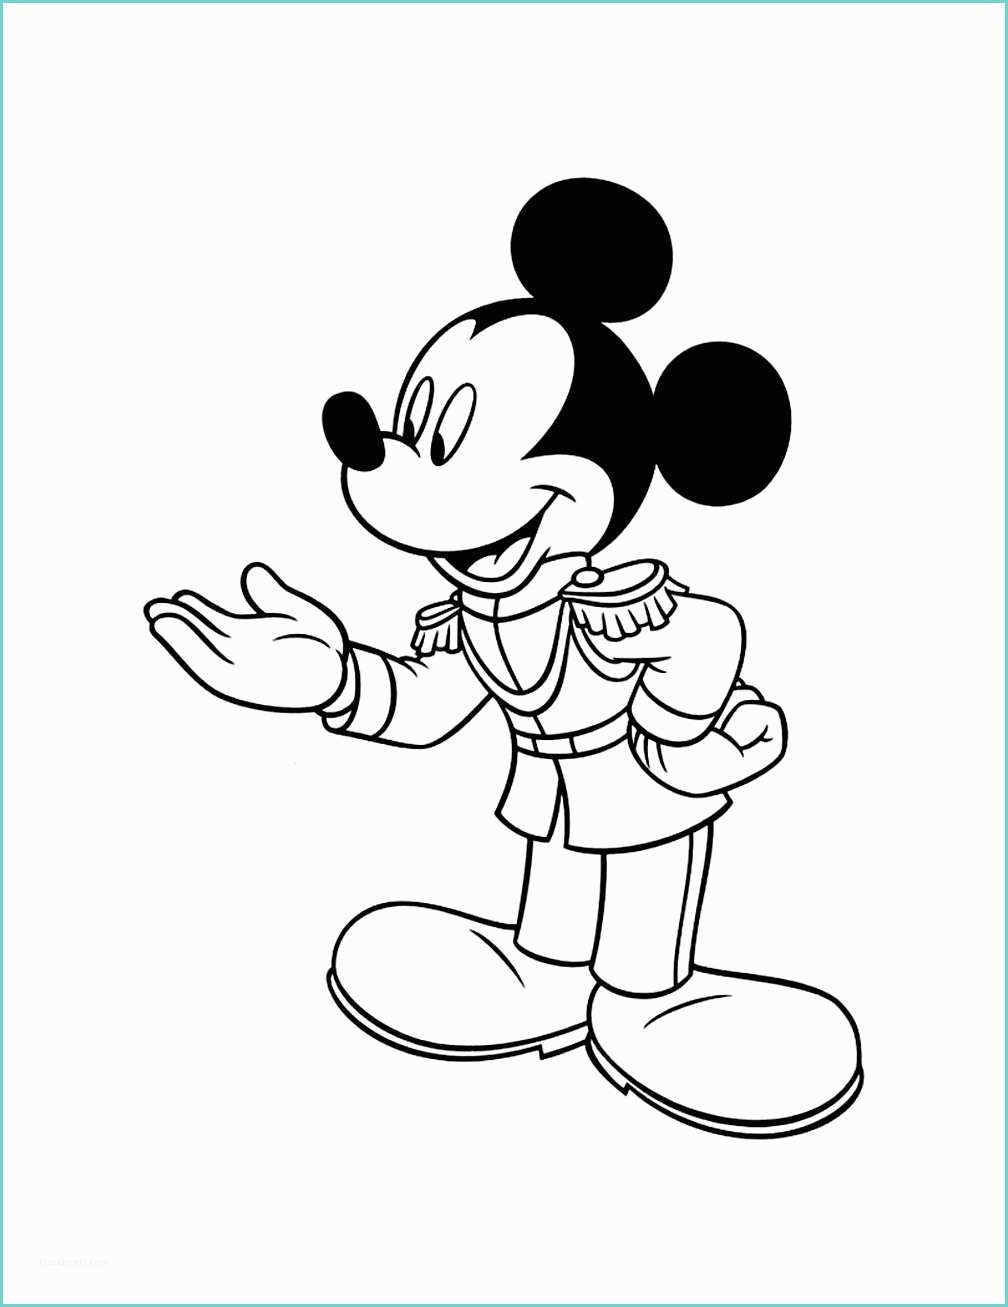 Dessin Tete De Mickey Mickey Prince Coloriage Mickey Coloriages Pour Enfants